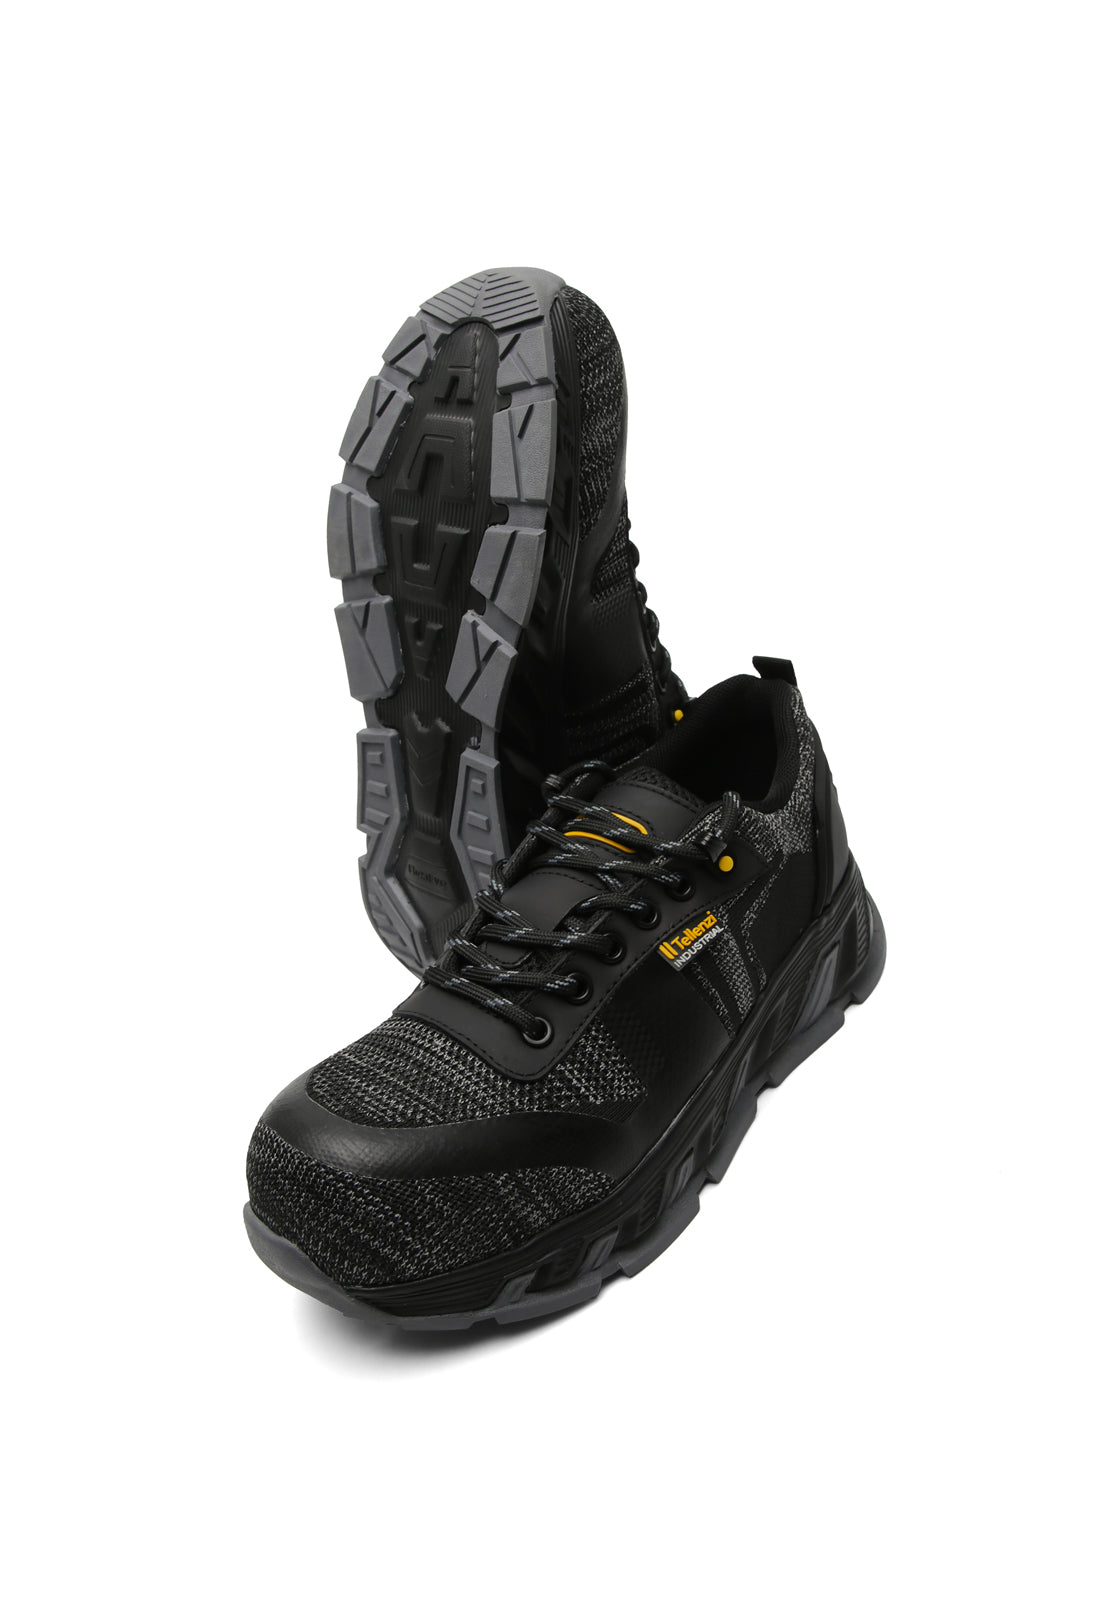 Zapatos Hombre Outdoor Industrial Tellenzi Negro 77318